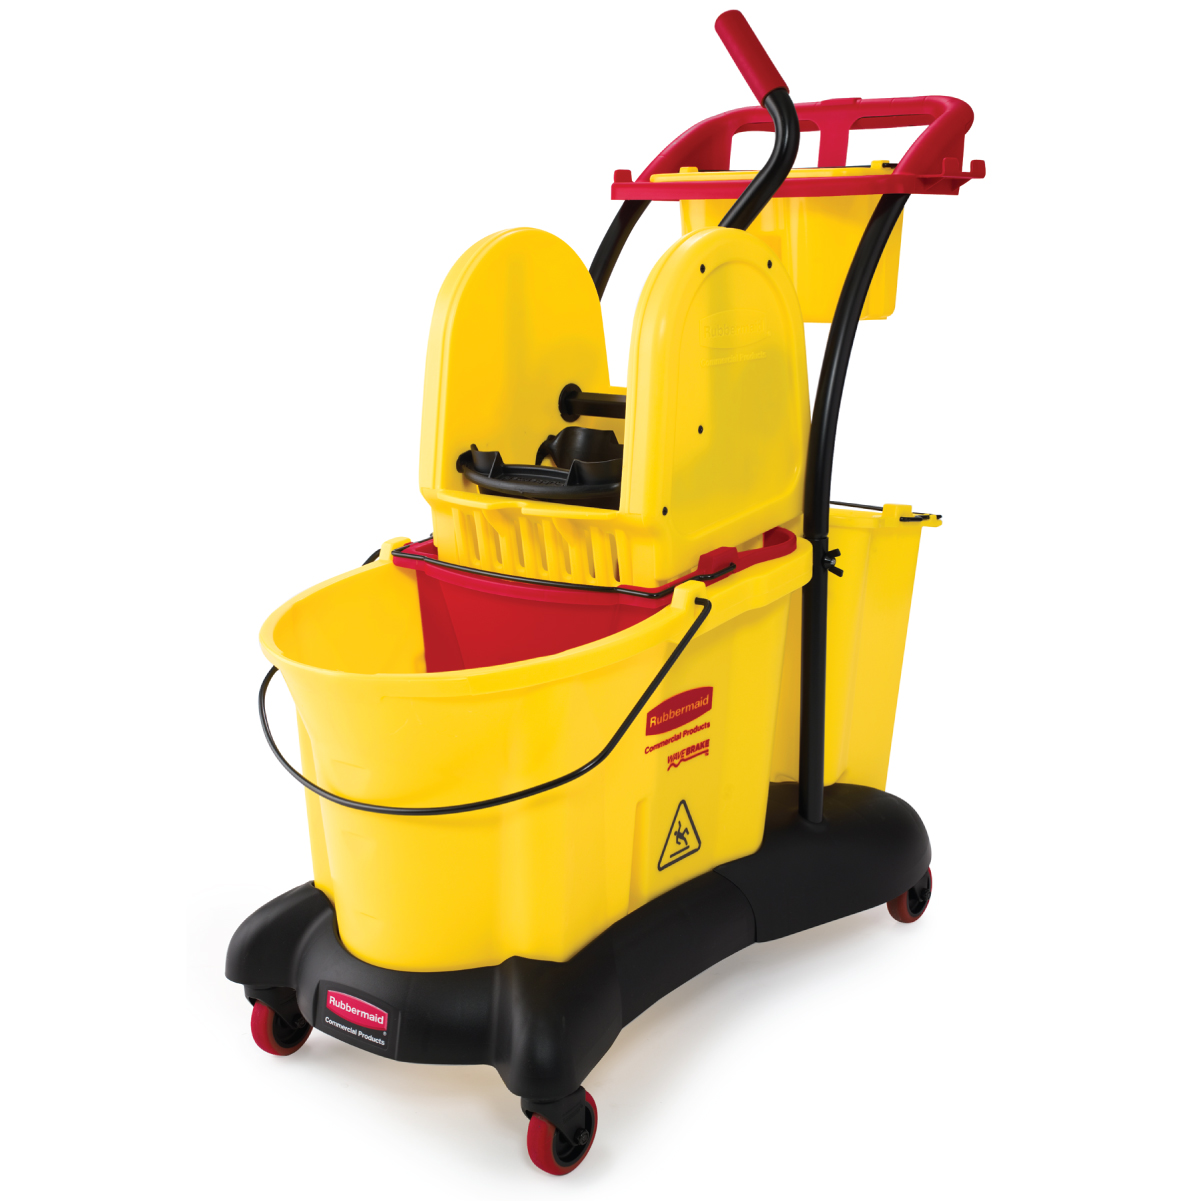 ถังบีบม็อบ 33.1 ลิตร แบบรถเข็น WaveBrake® 35 QT Mopping Trolley Down Press สีเหลือง